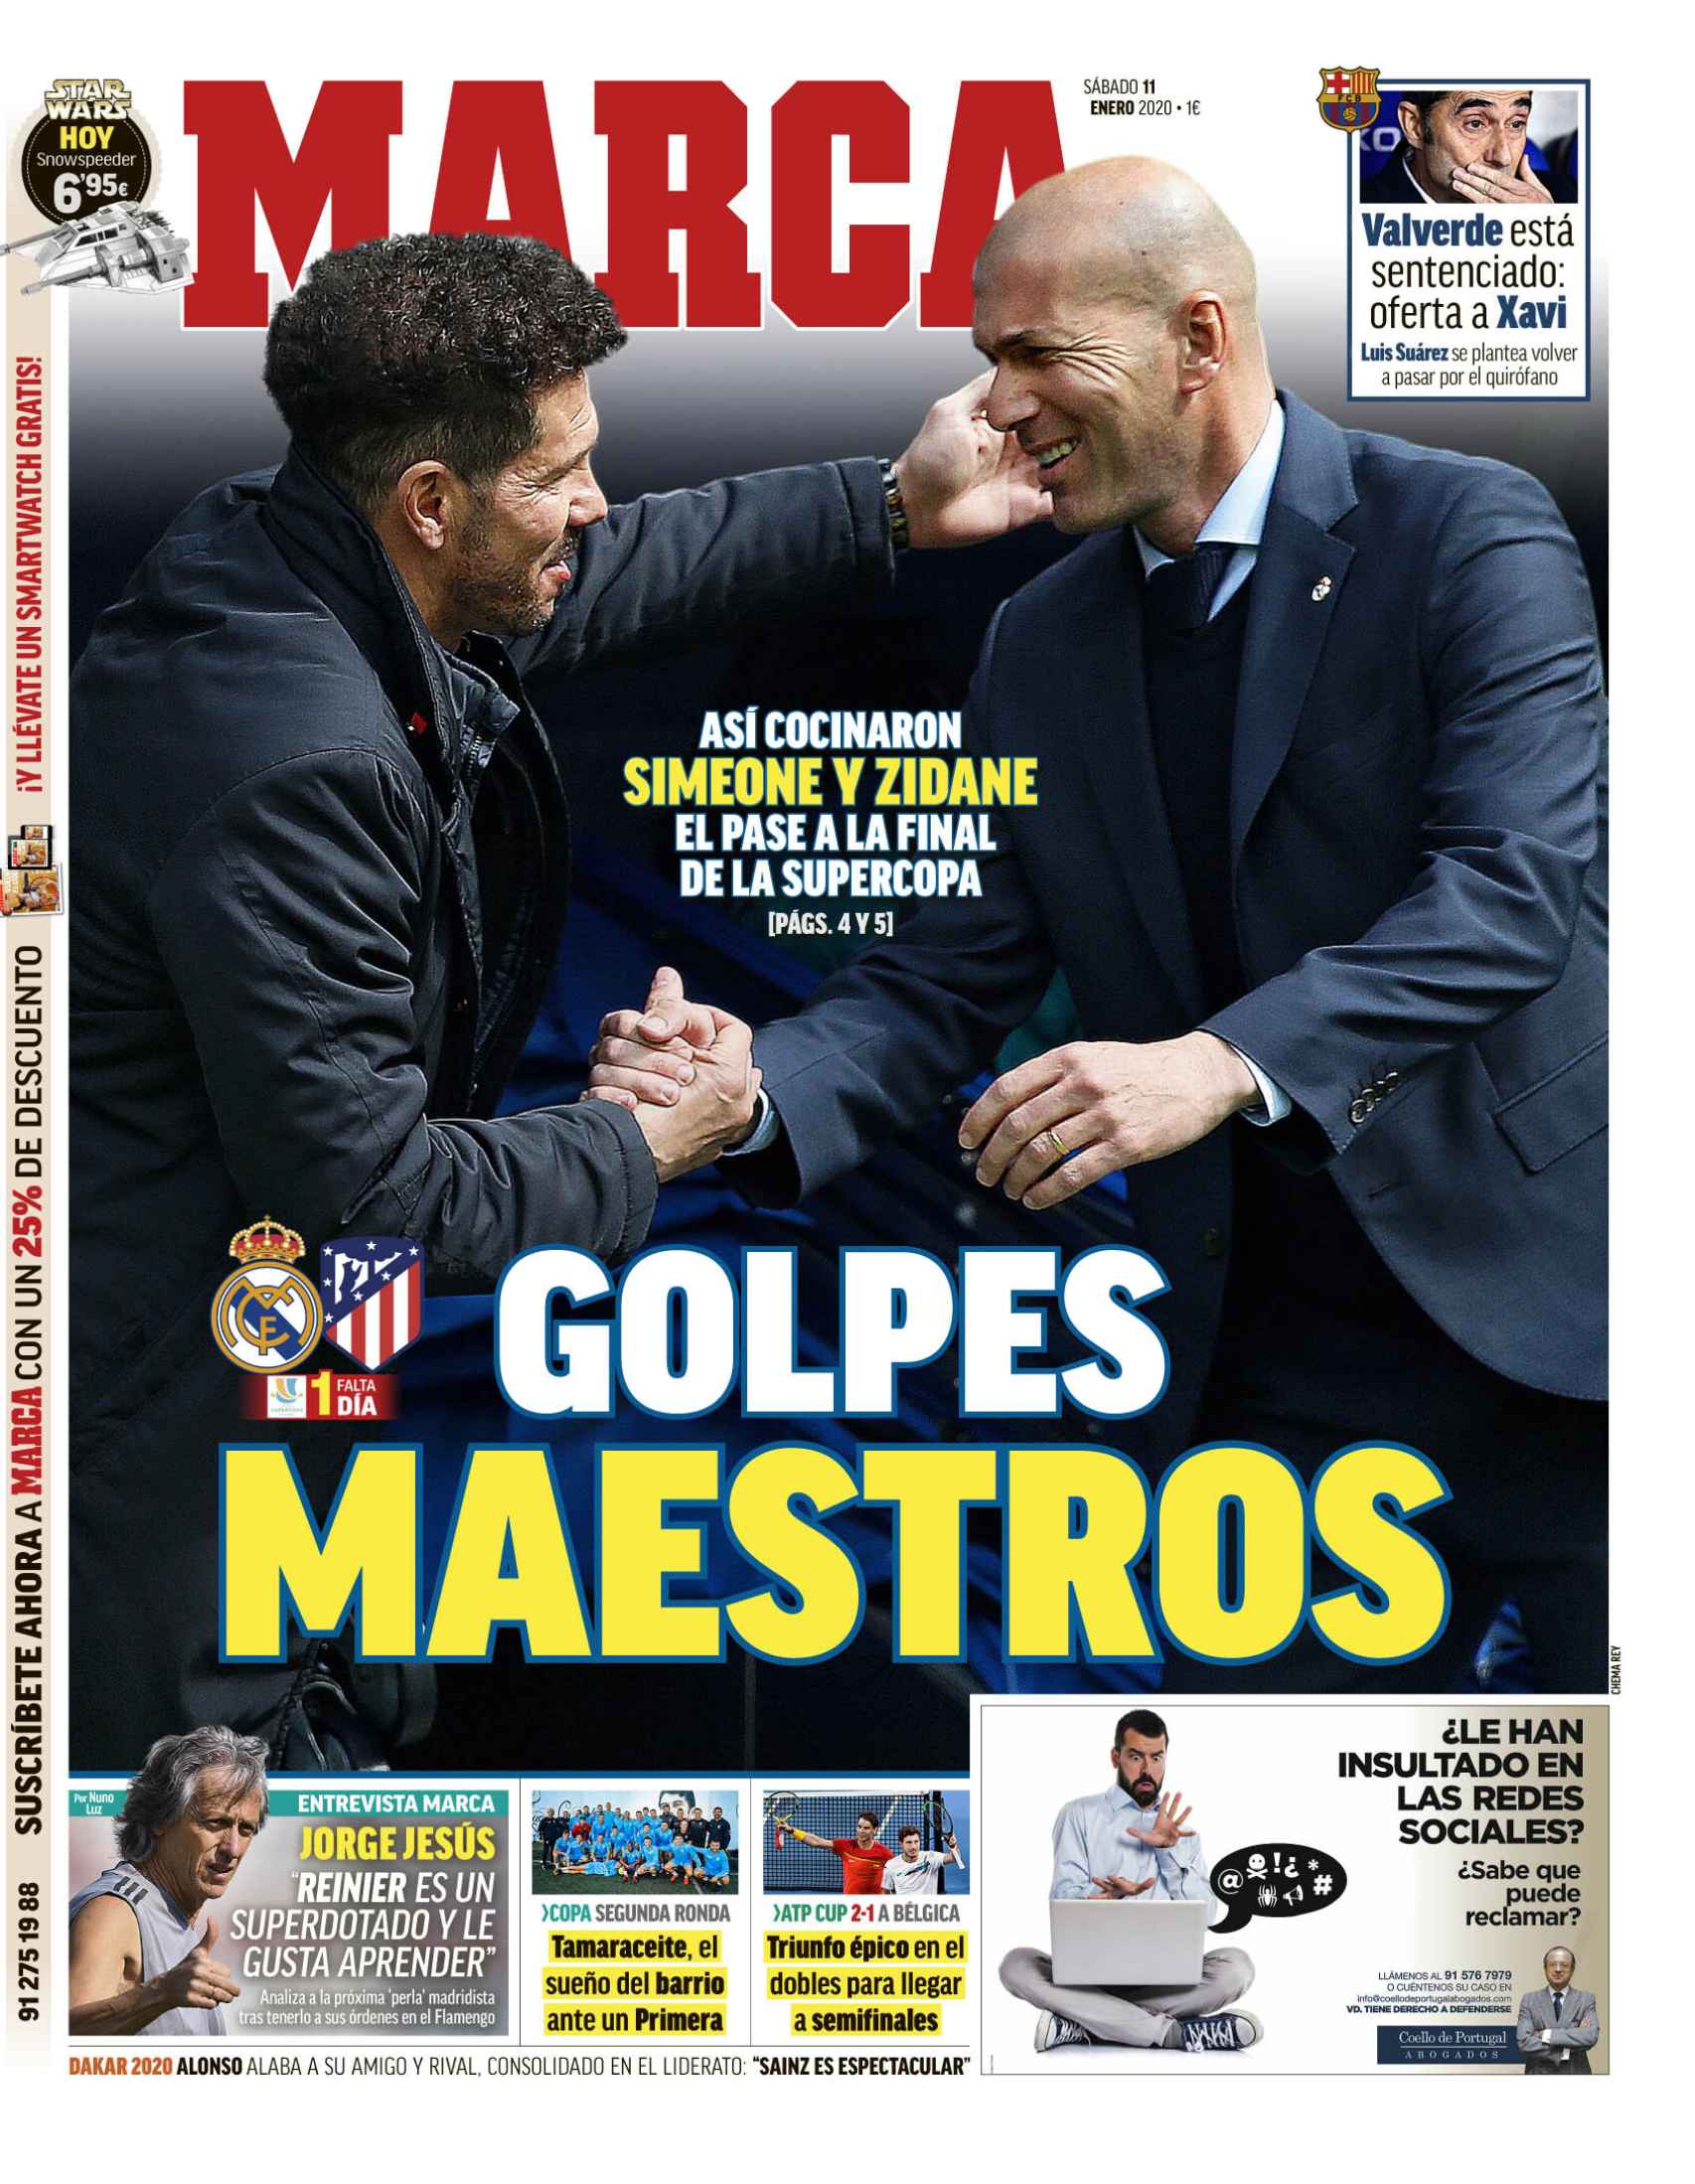 La portada del diario MARCA (11/01/2019)